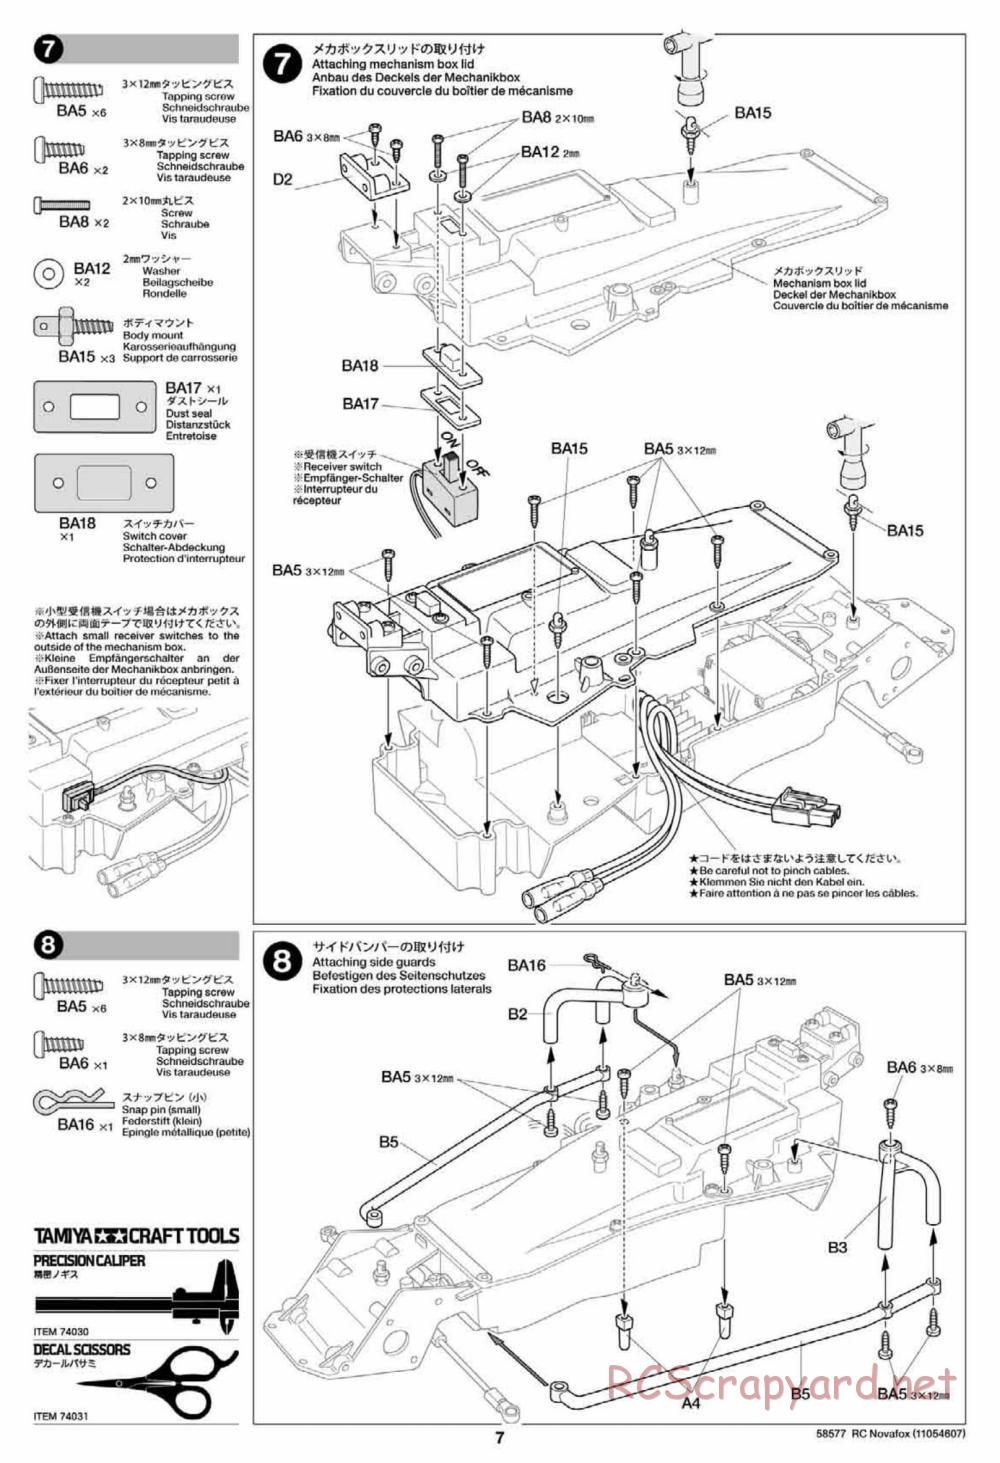 Tamiya - Novafox Chassis - Manual - Page 7